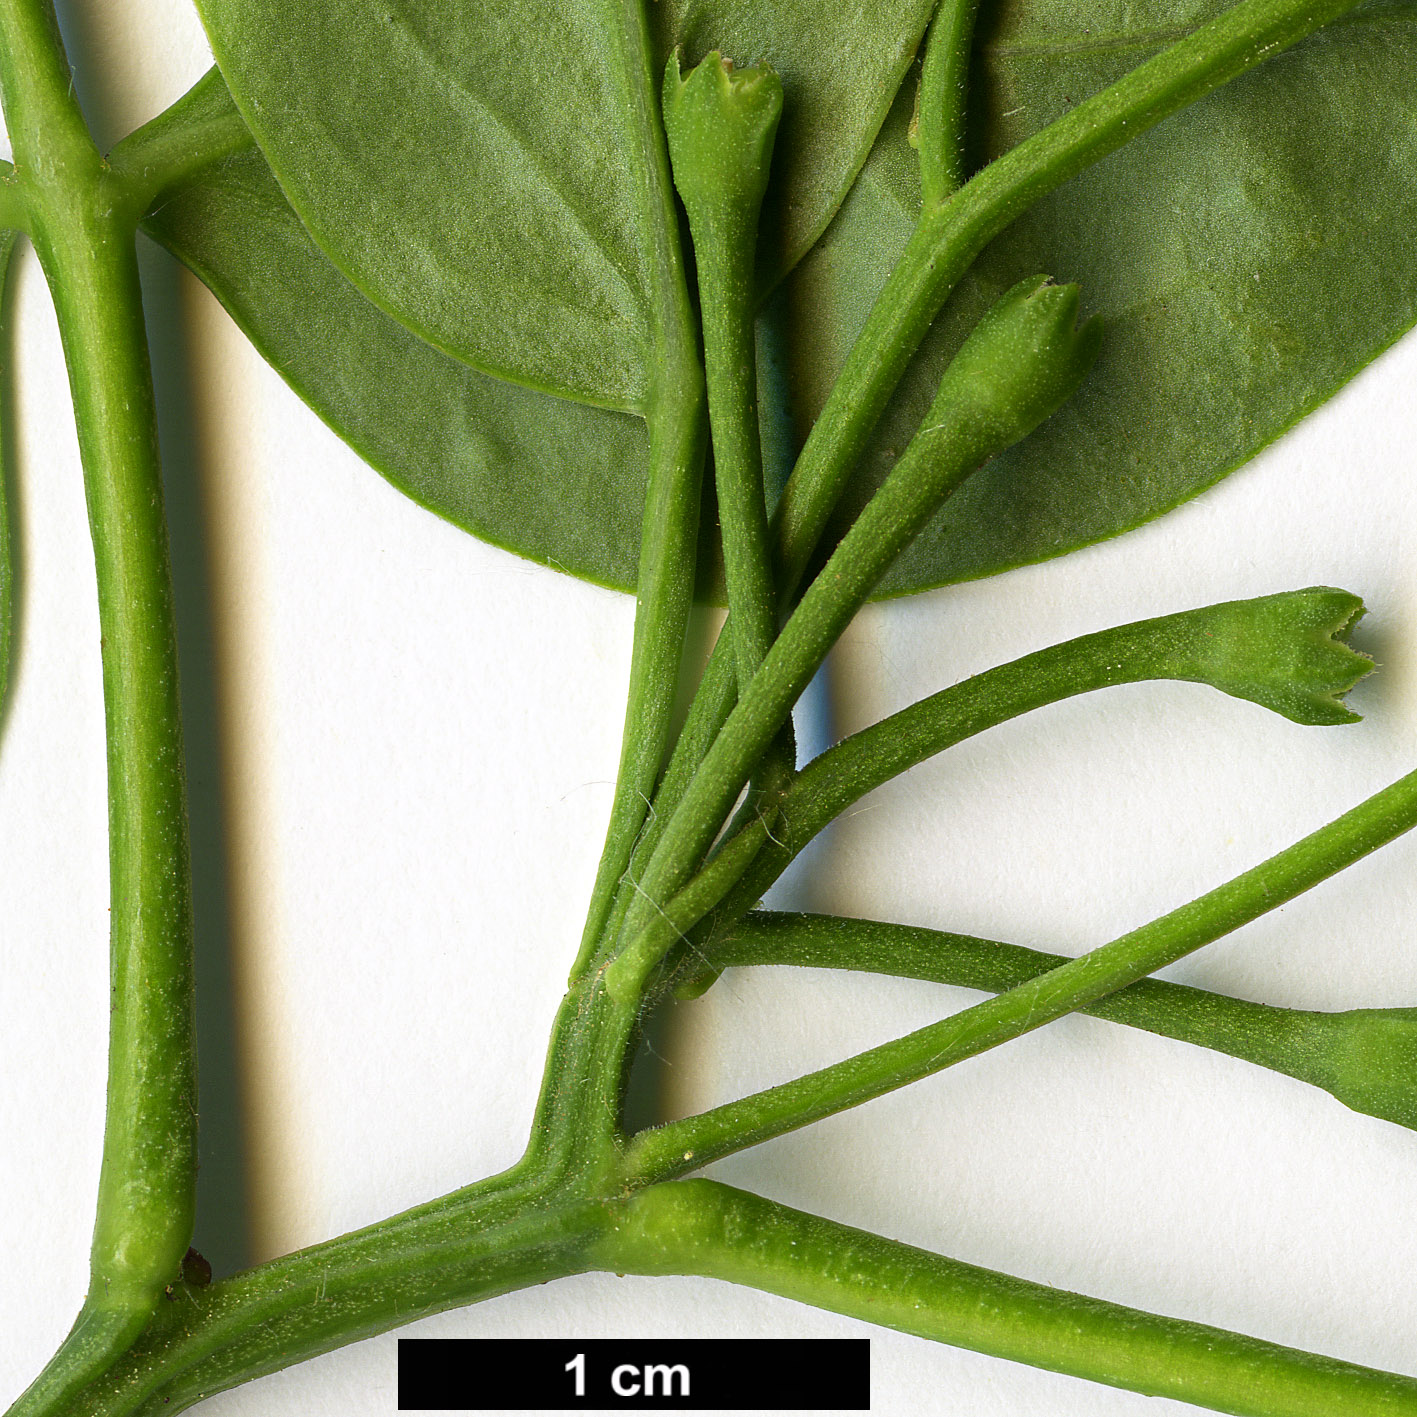 High resolution image: Family: Oleaceae - Genus: Jasminum - Taxon: humile